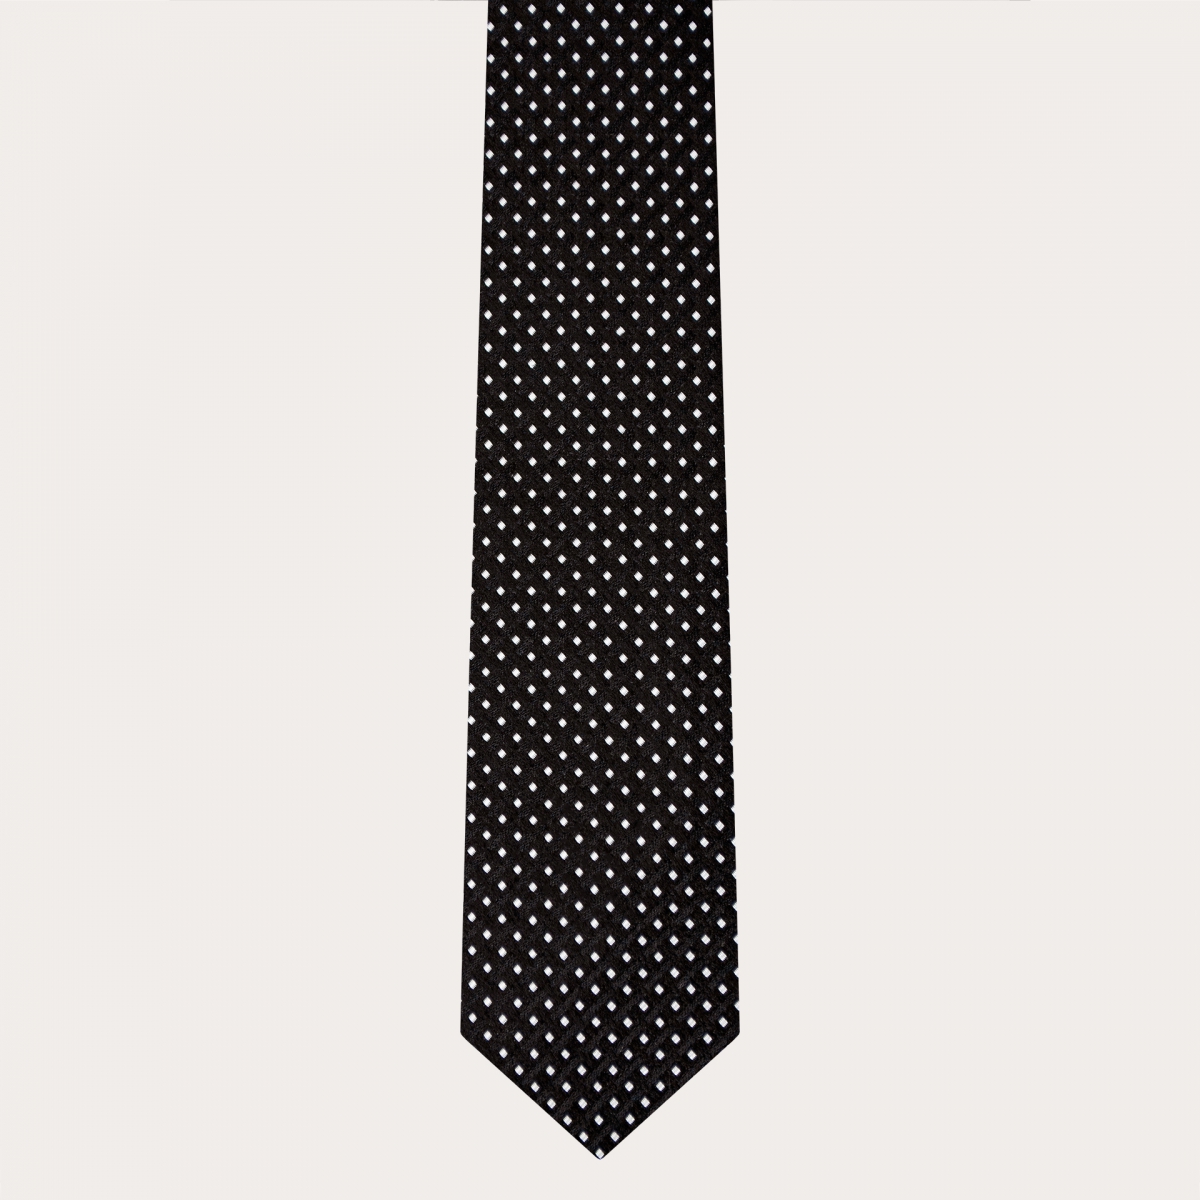 Corbata en jacquard de seda, negra con de puntos geométricos